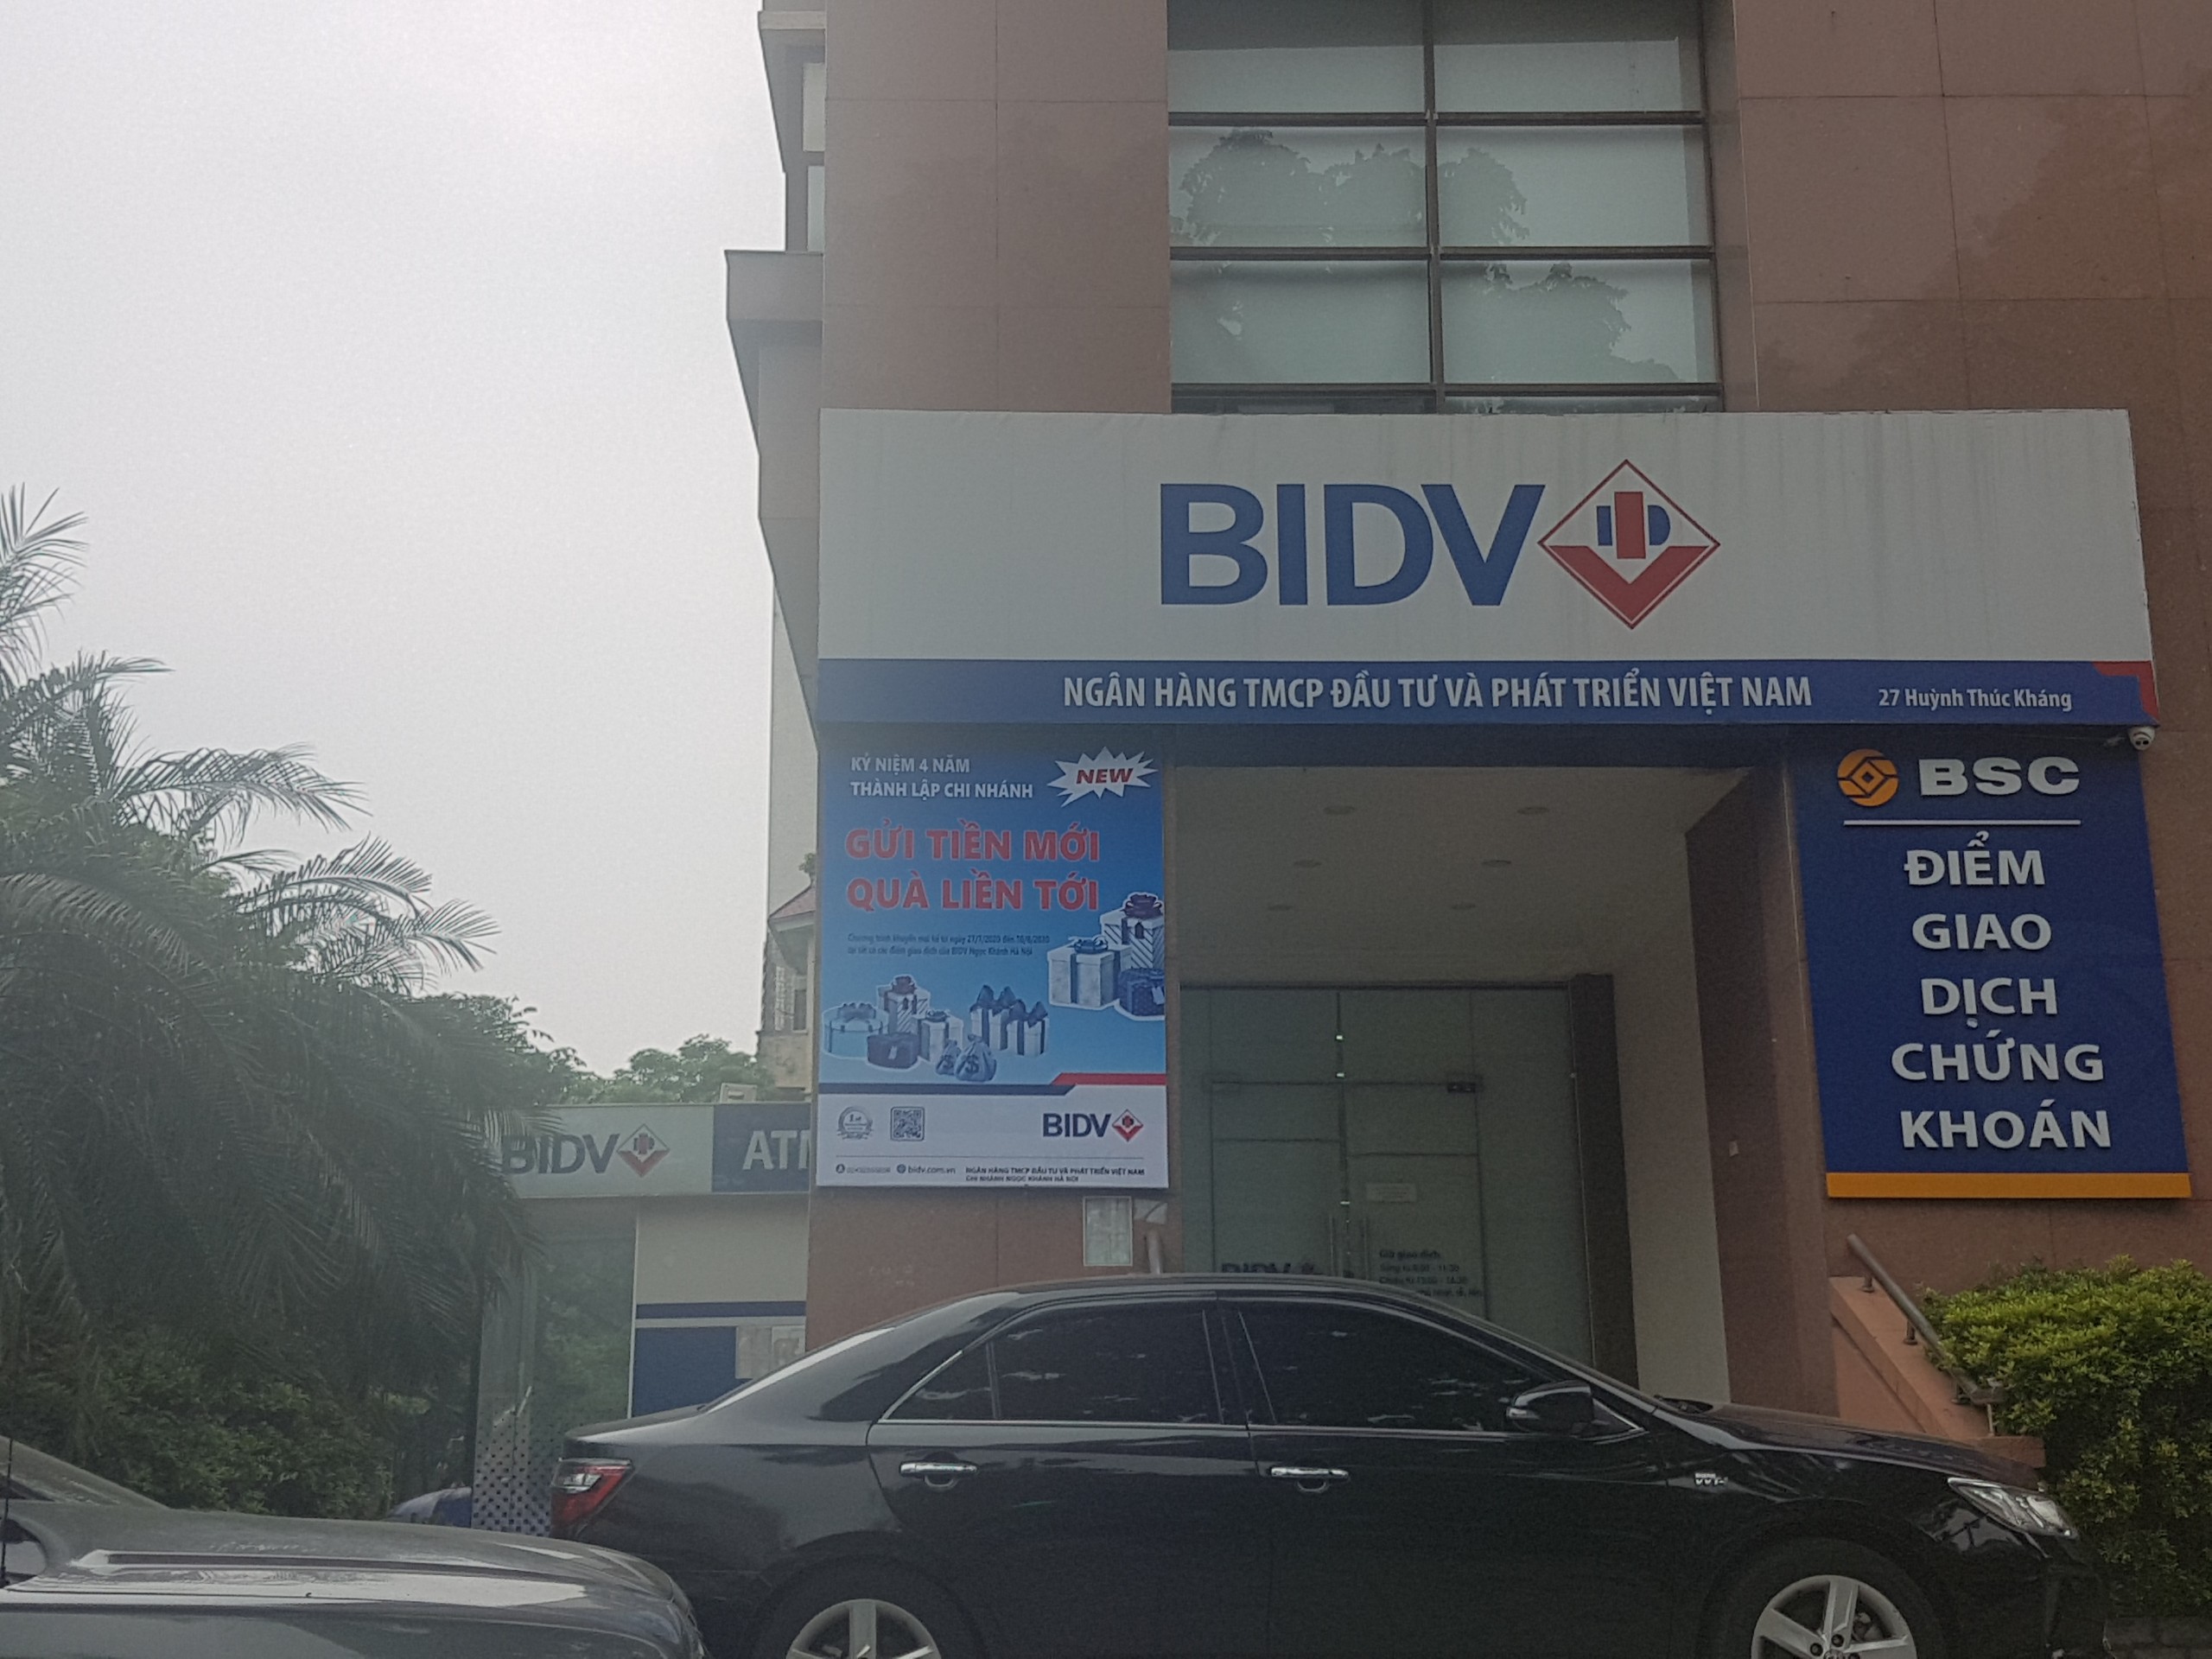 Cướp ngân hàng BIDV tại chi nhánh Ngọc Khánh, Hà Nội - Ảnh 2.